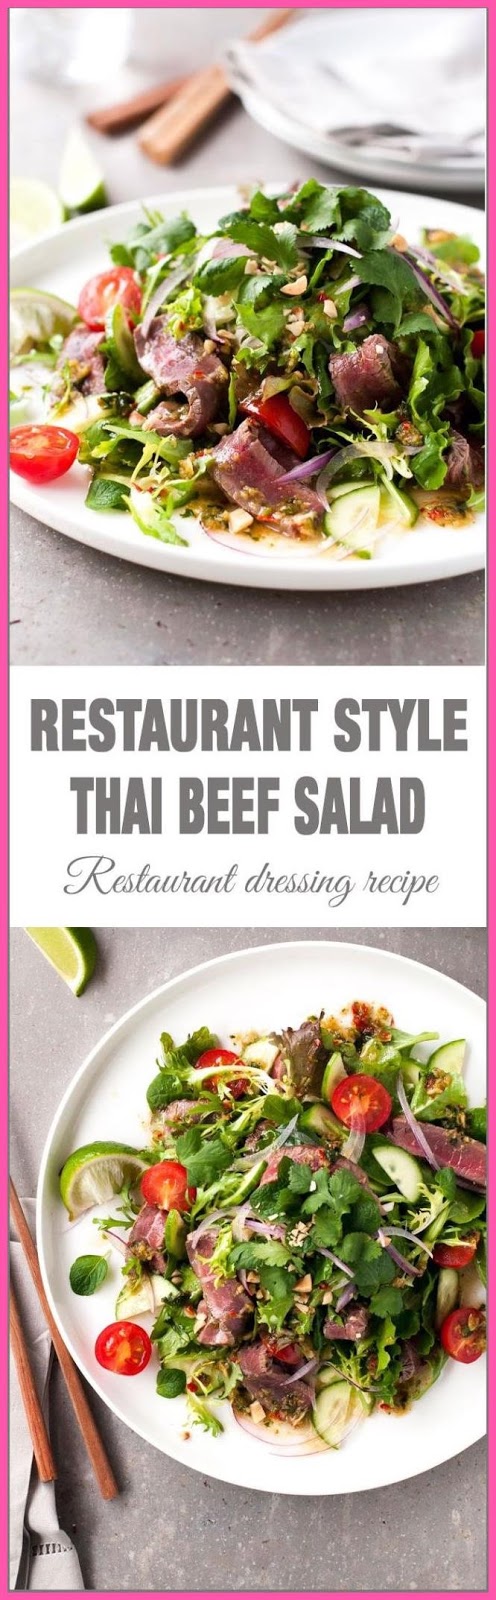 19 Thai Simple Kitchen Hong Kong Die Besten Ideen zu Thai Restaurant auf Pinterest Thai,Simple,Kitchen,Hong,Kong